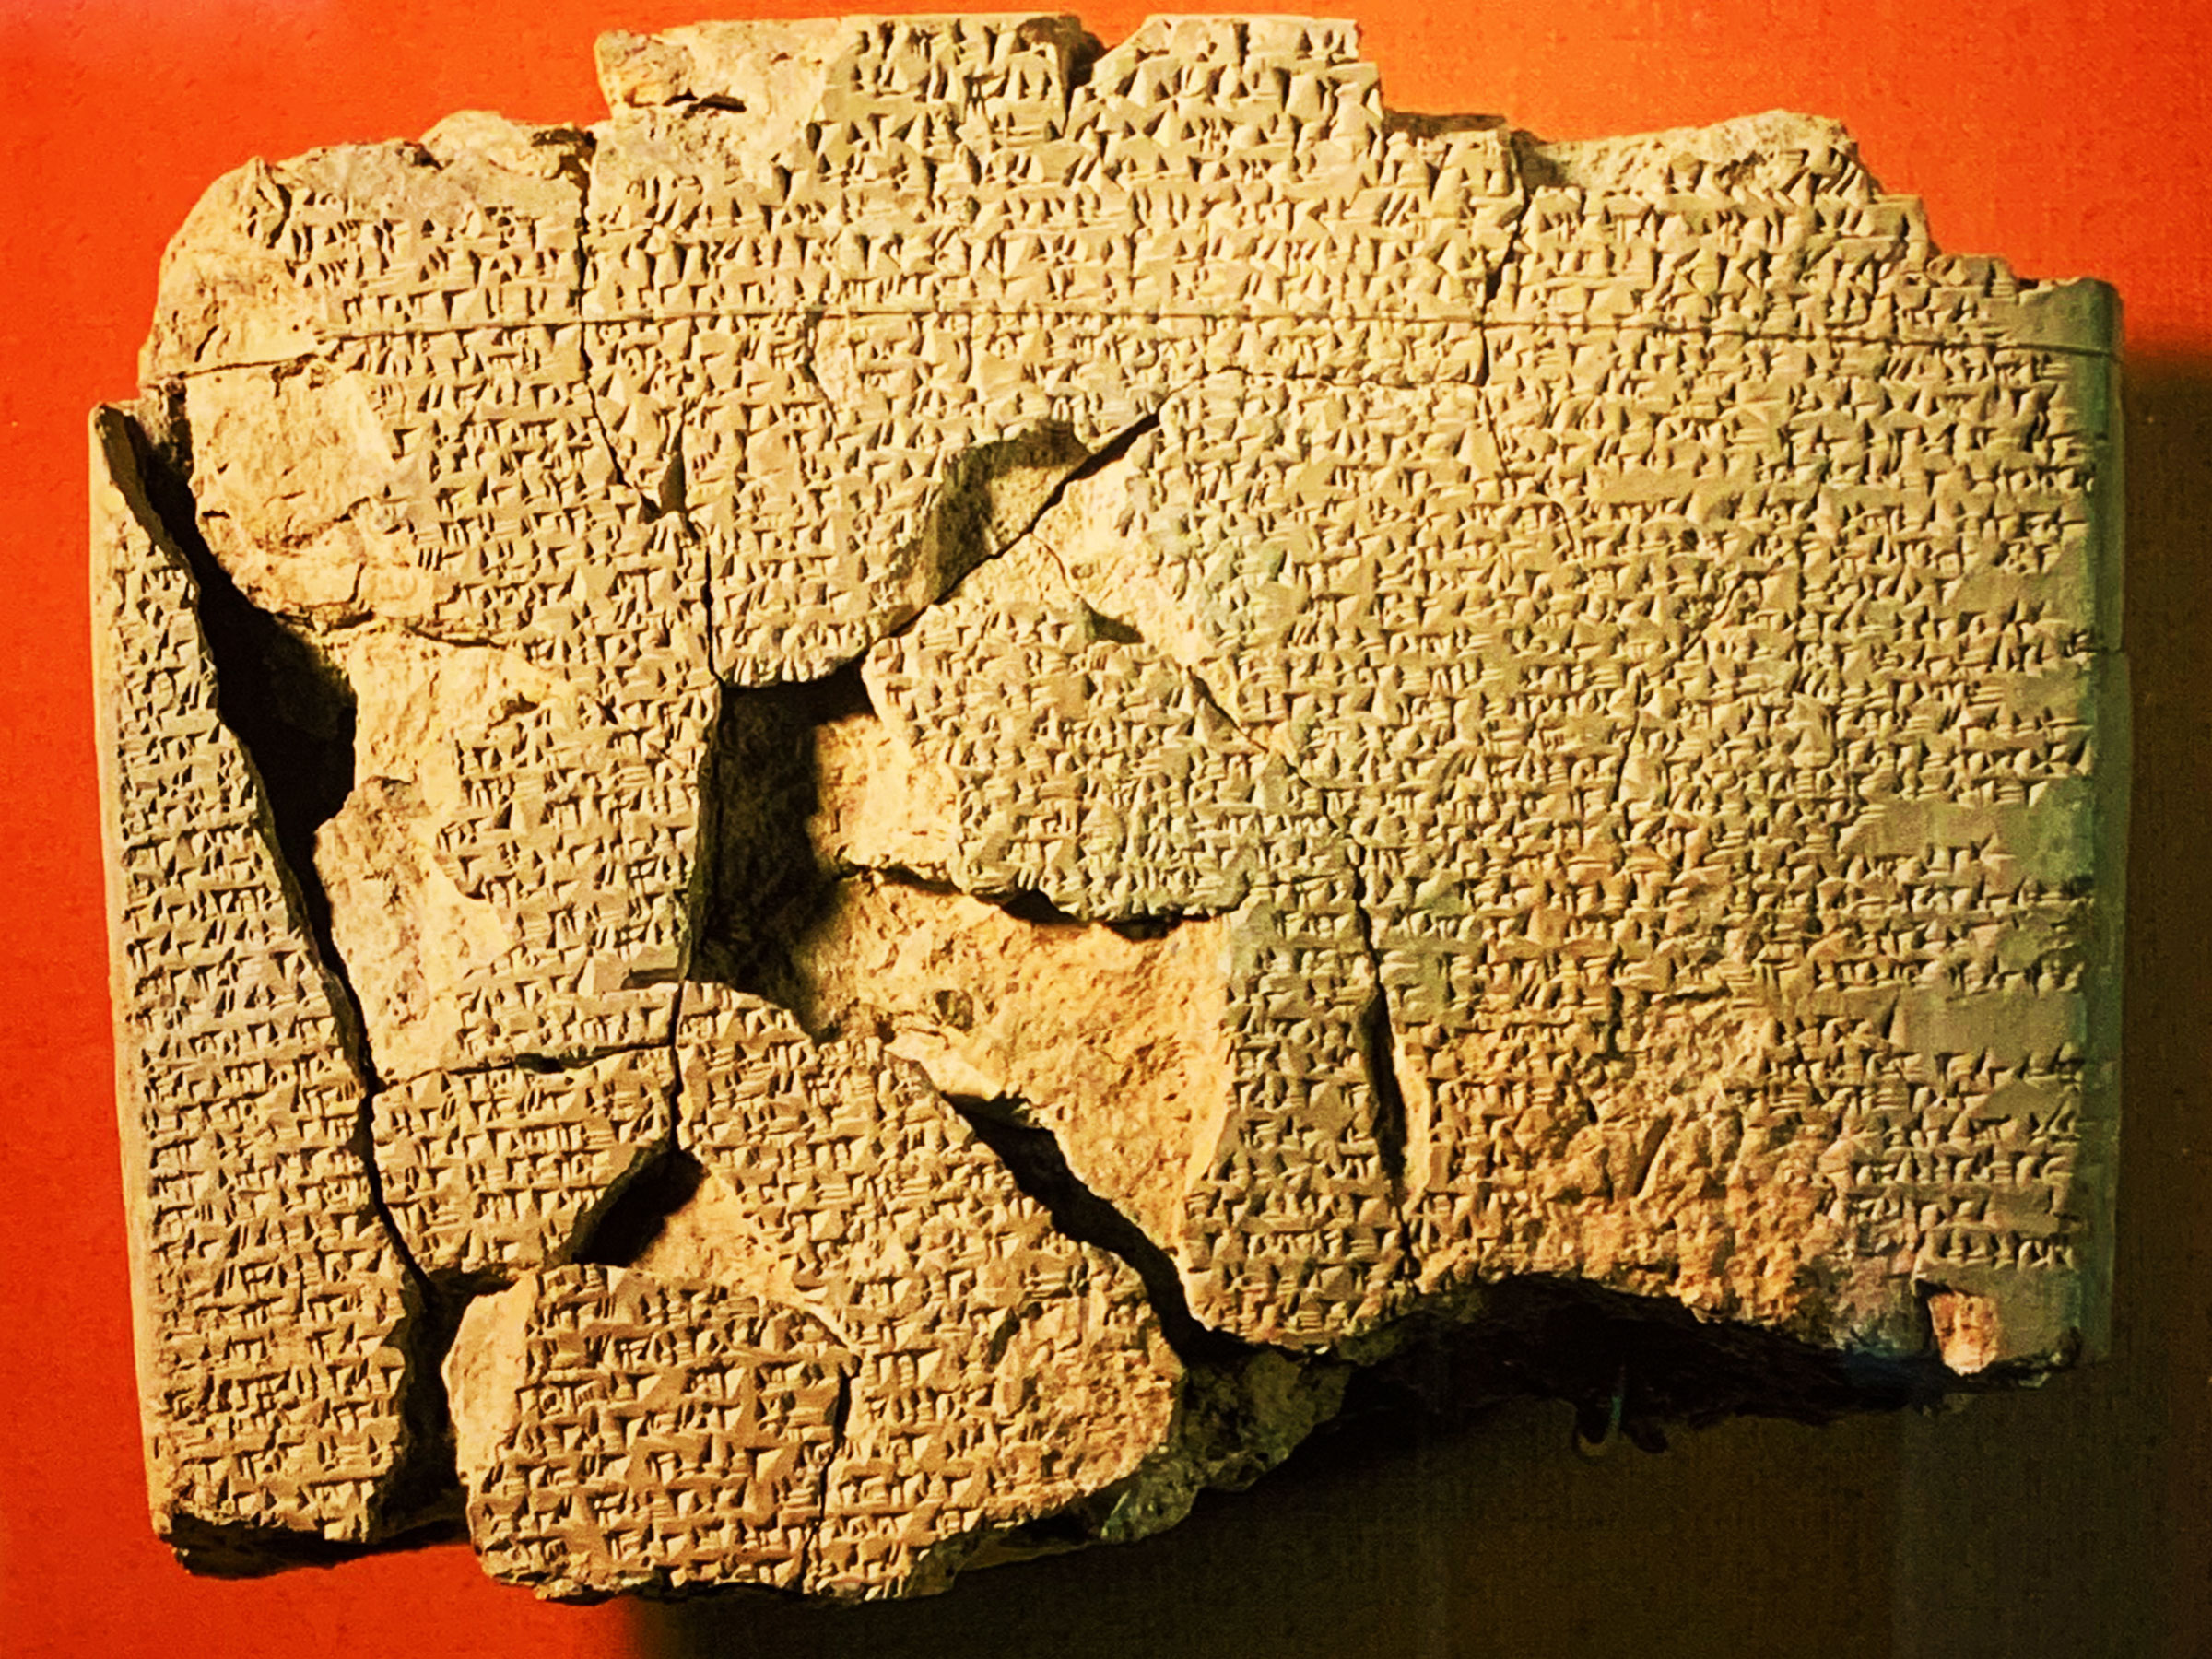 Tratado de Kadesh em Hitita